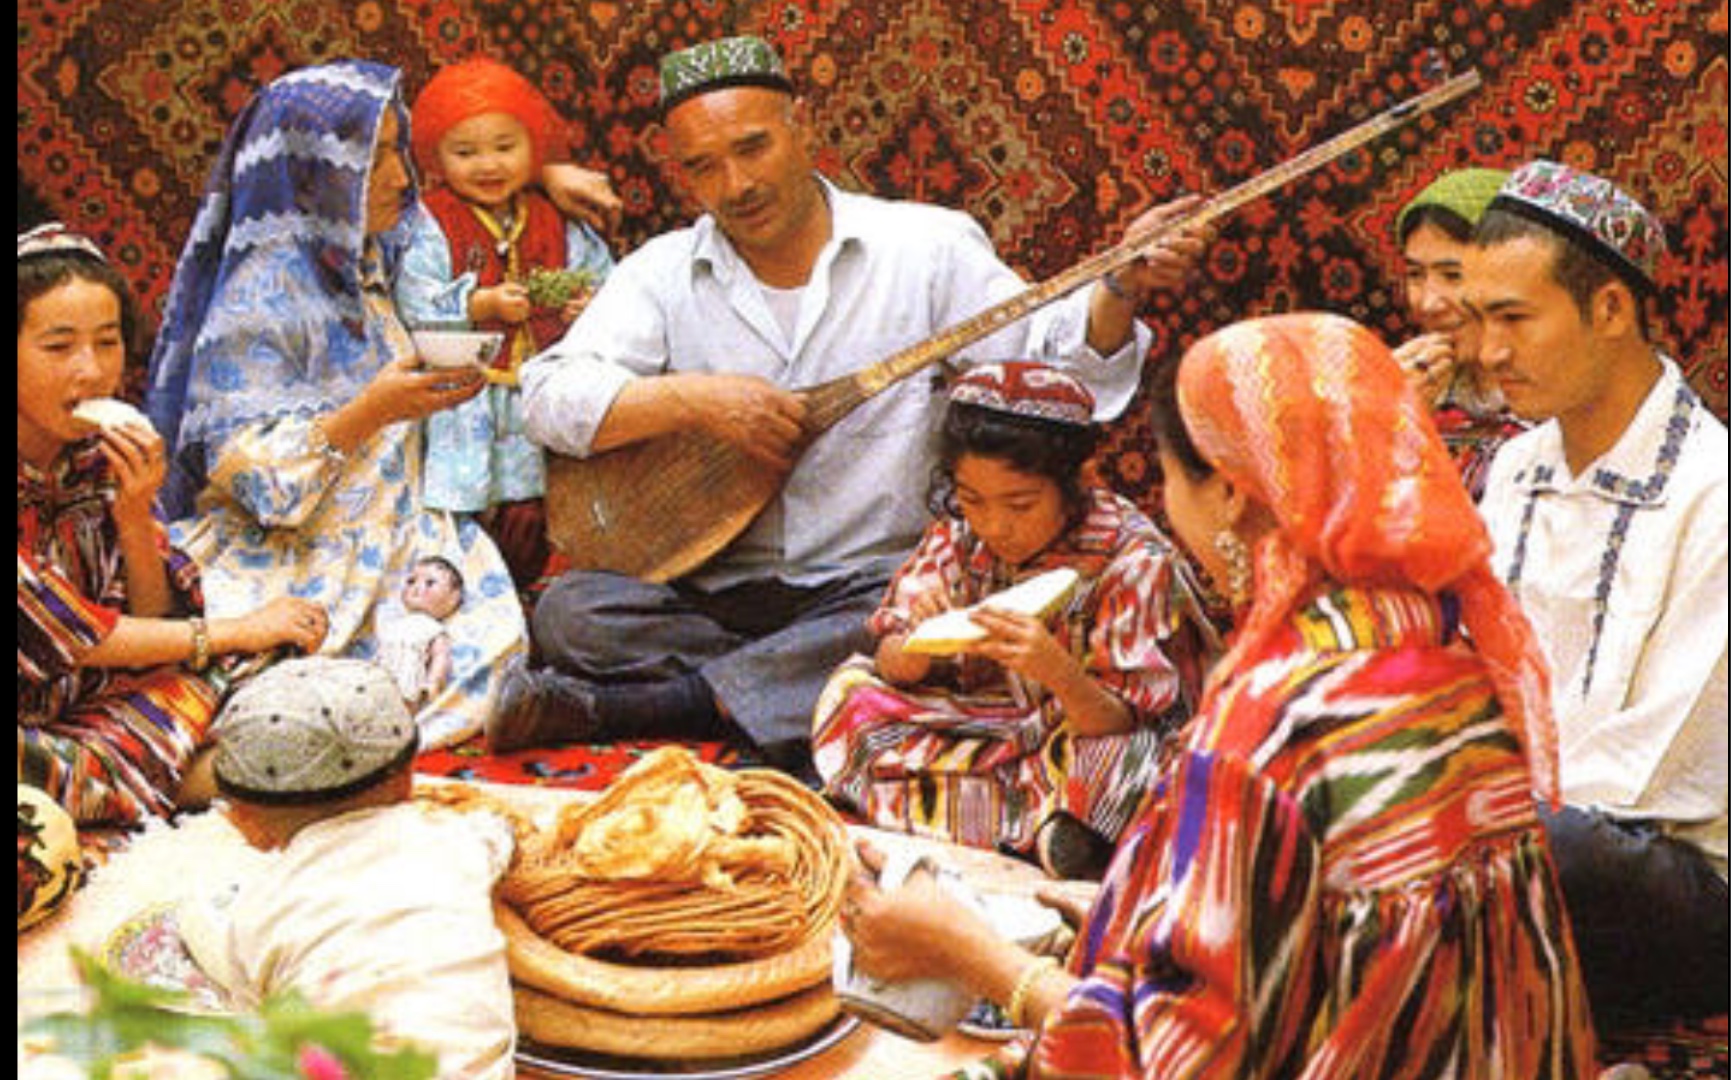 即兴伴奏举杯祝贺乌孜别克族民歌感受新疆的风味吧